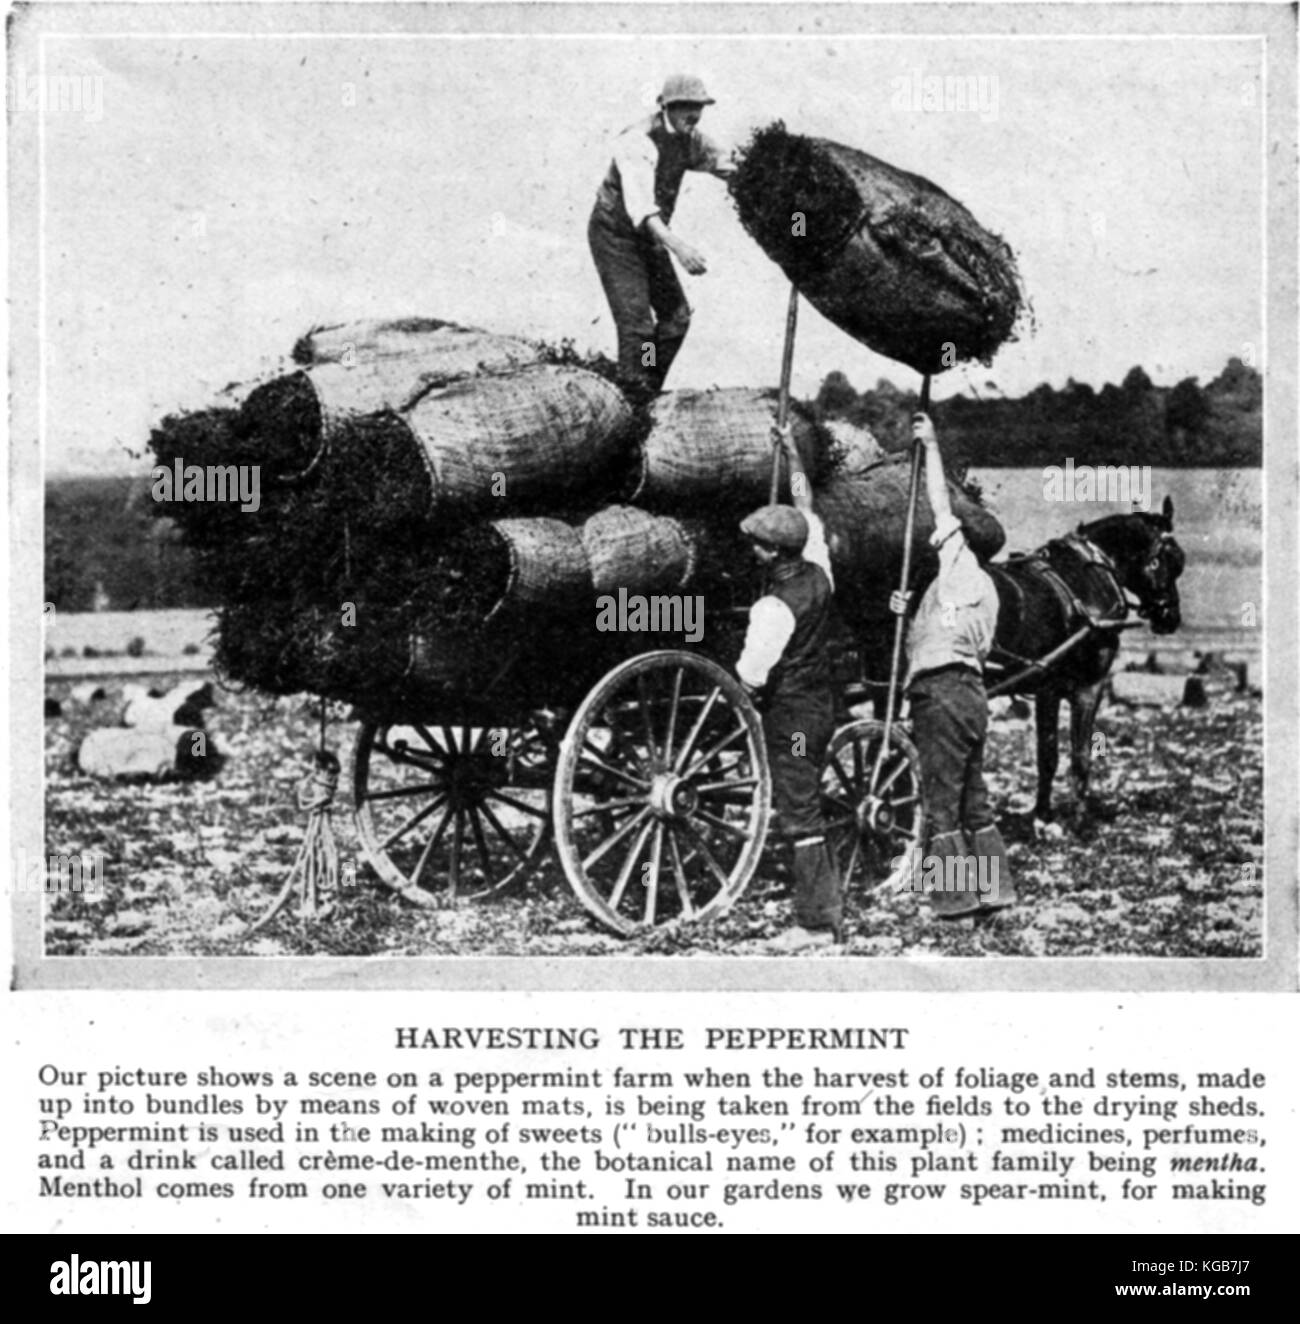 Pfefferminze Landwirtschaft für den Einsatz in Süßigkeiten, Duftstoffe und Arzneimittel - Nördliche England 1930 - Ernte Beschreibung enthalten Stockfoto